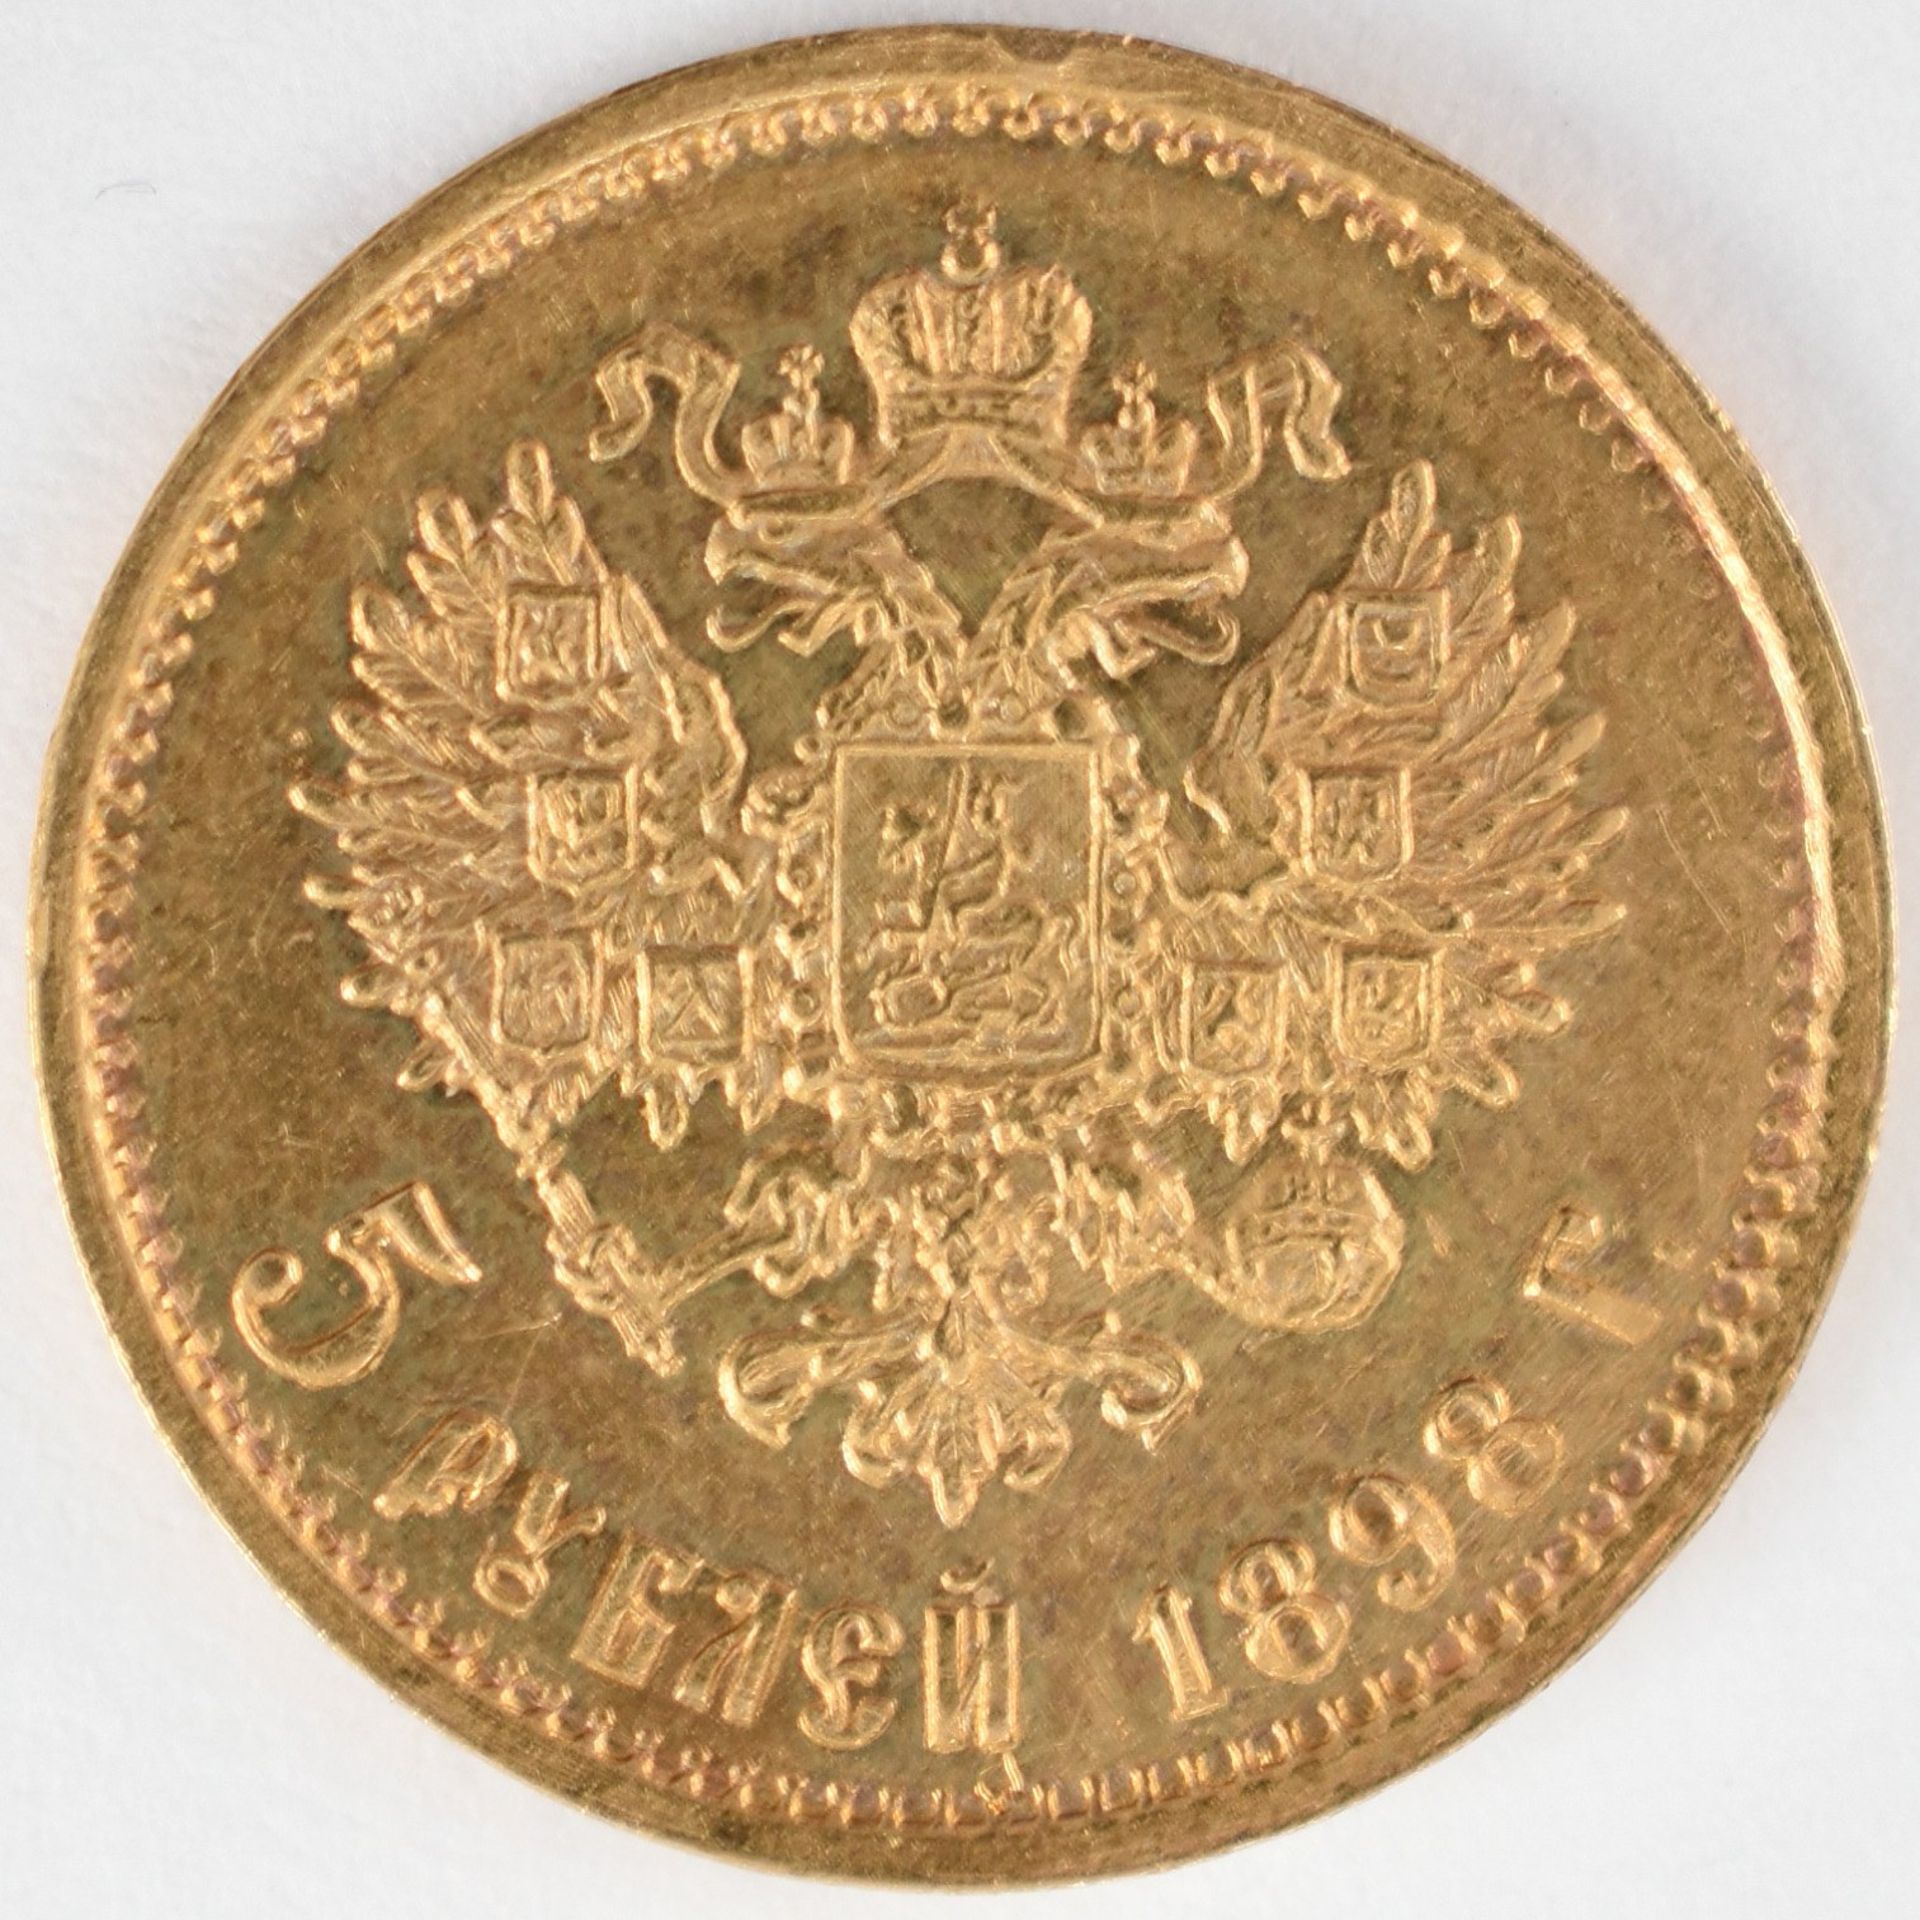 Goldmünze Russland Zarenzeit - 1898 5 Rubel in Gold, 900/1000, 4,3 g, D ca. 18 mm, av. Zar - Bild 3 aus 3